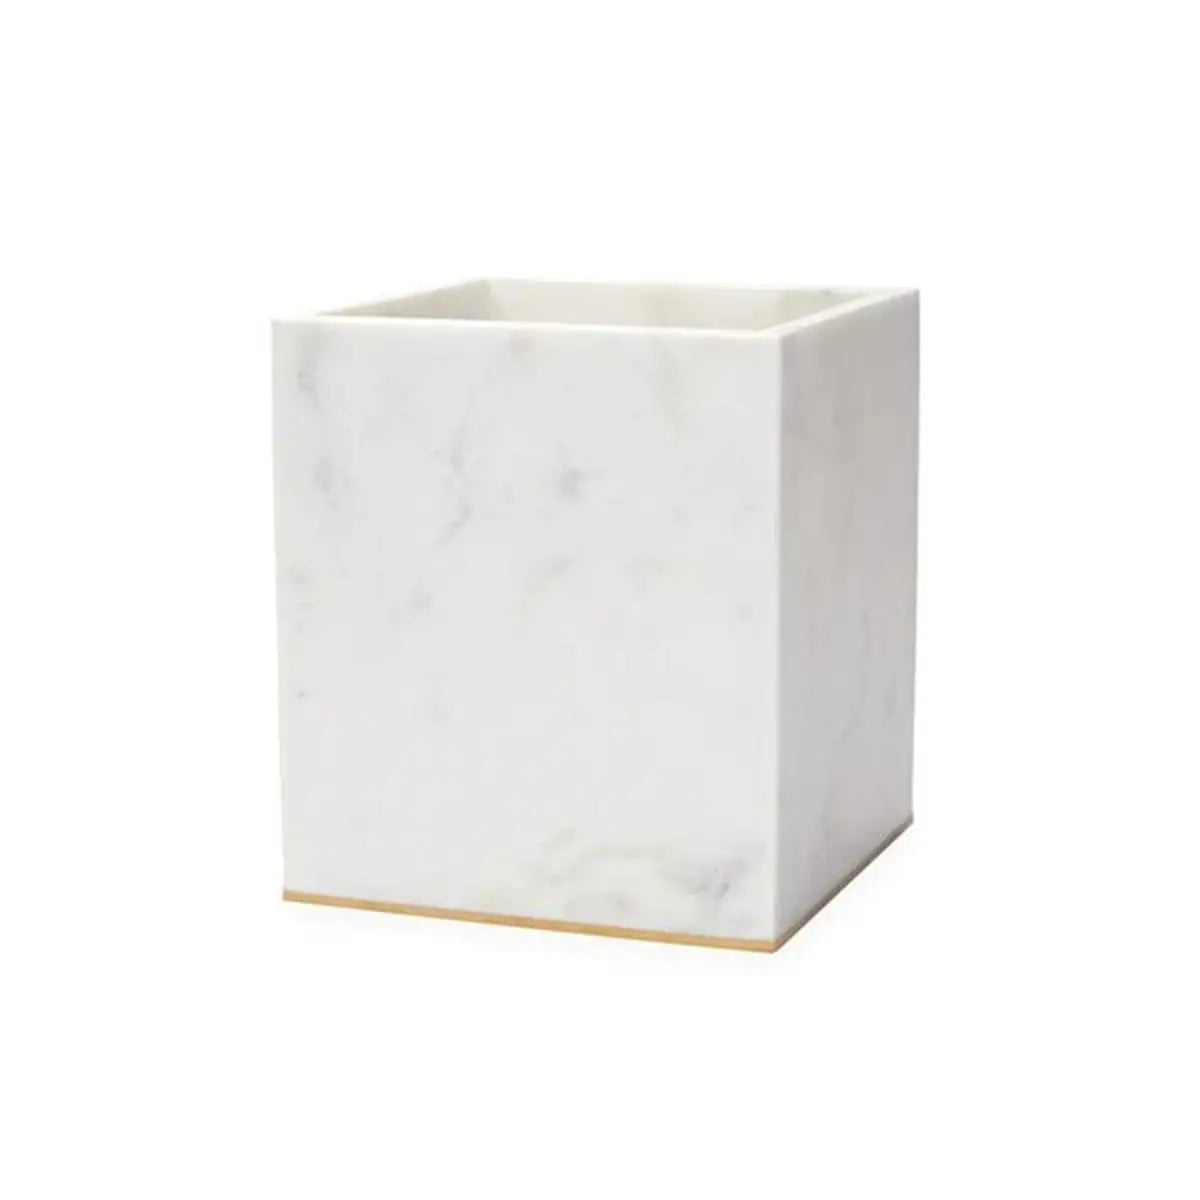 Sferra Pietra Marble Waste Basket in White, Gold